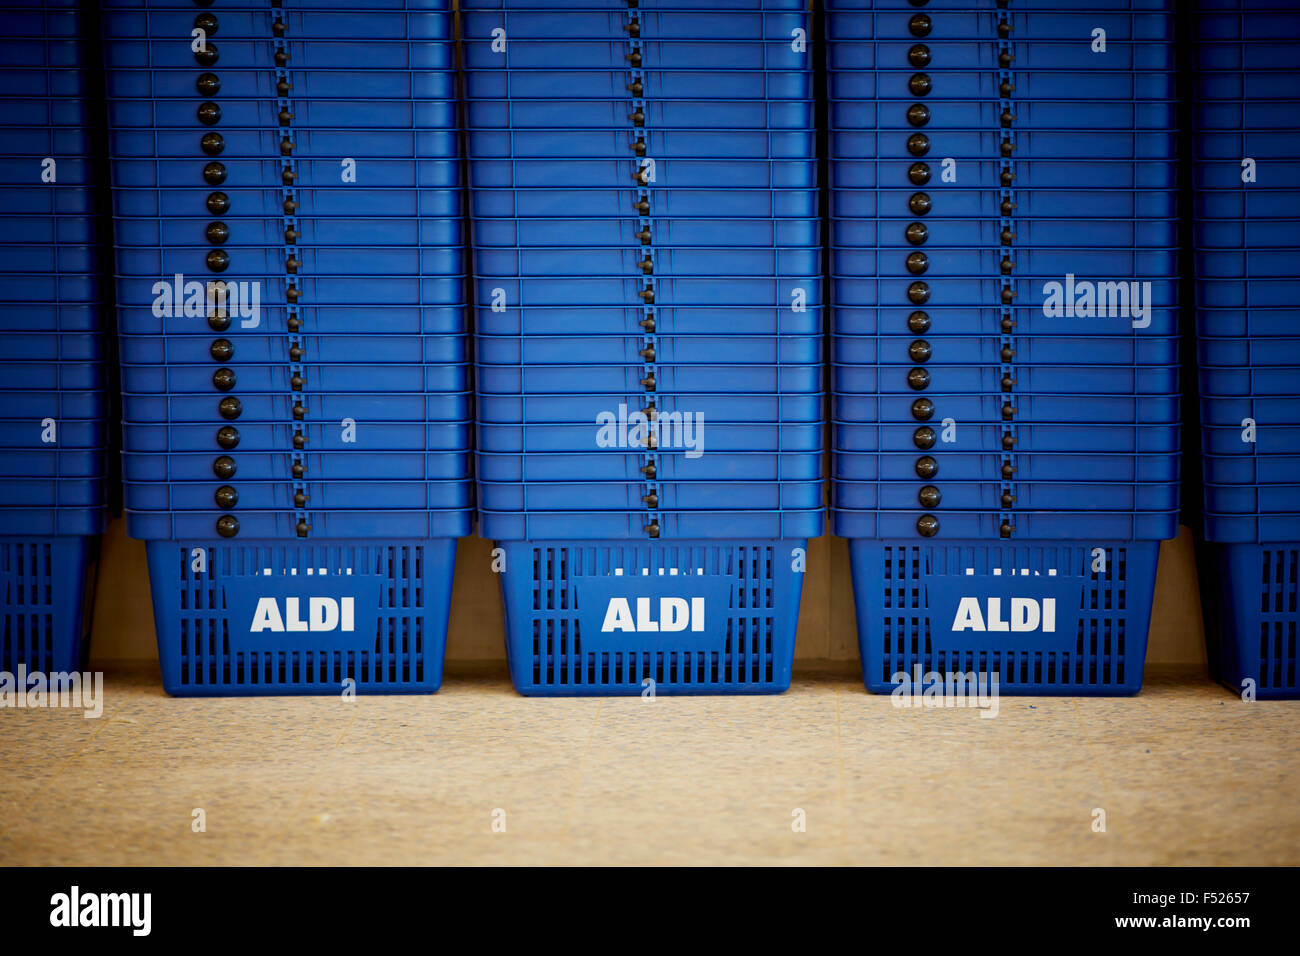 Supermarché discount Aldi des paniers en plastique bleu dans de nombreuses lignes empilées prête la chaîne de supermarchés discount leader mondial de boutiques Banque D'Images